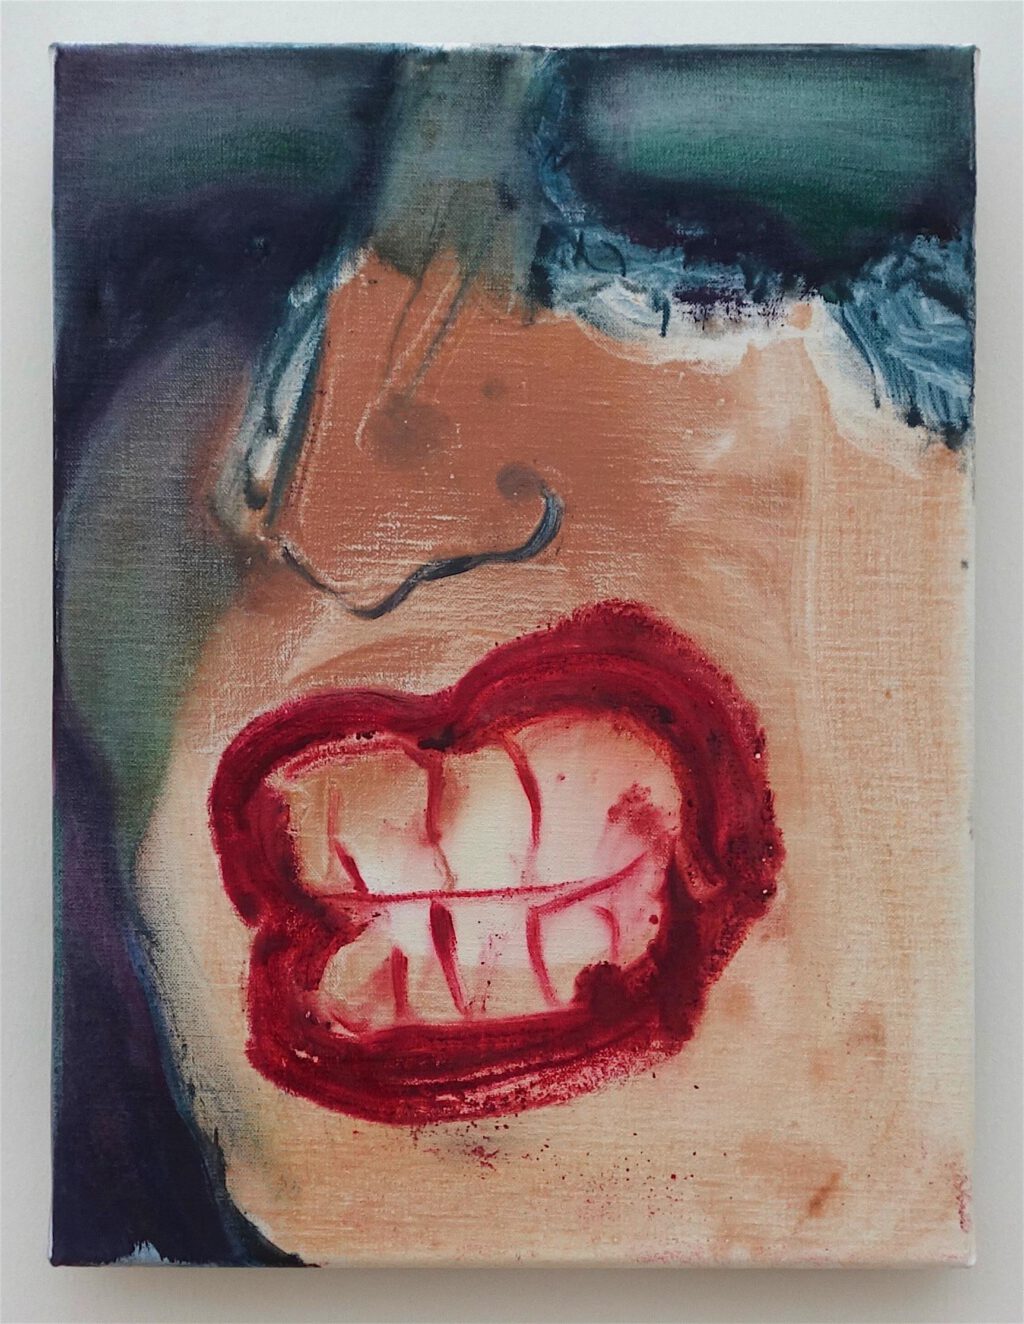 マレーネ・デュマ「歯」油絵、40 x 30 センチ、2018年